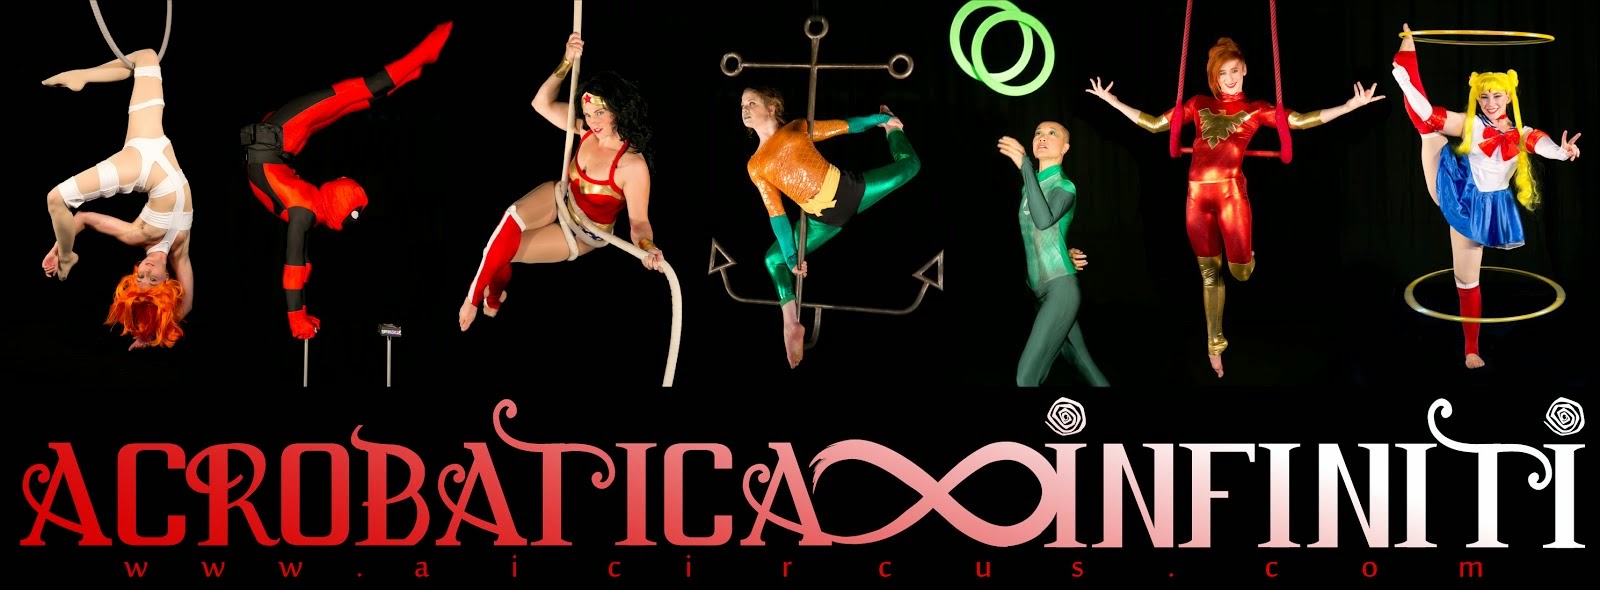 Acrobatica Infiniti Circus: Adventures of the Nerd Circus!